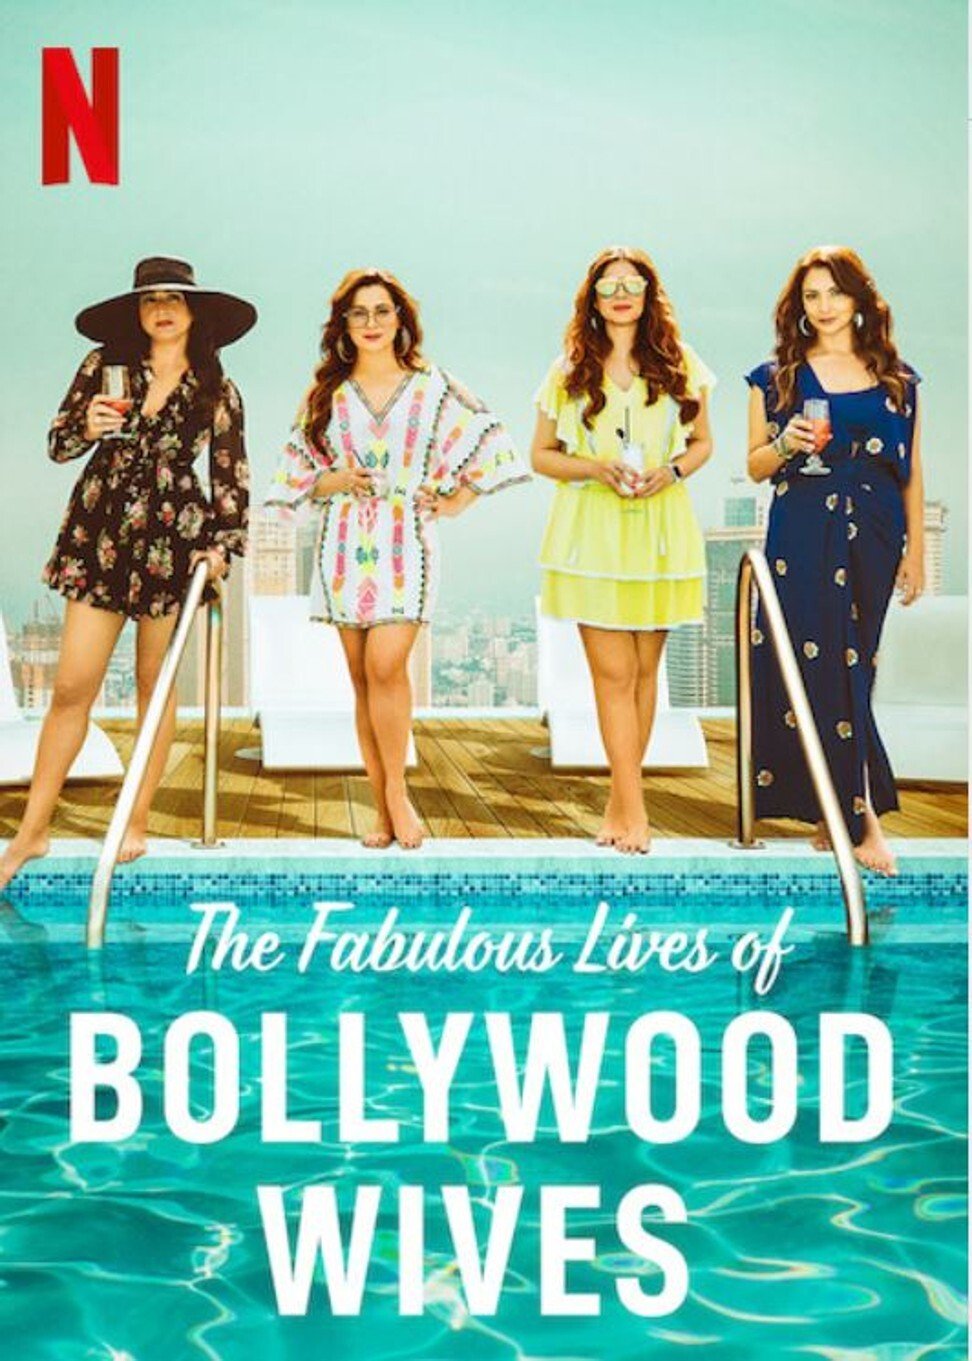 ดูหนังออนไลน์ฟรี Fabulous Lives of Bollywood Wives Season 1 Ep08 END แฟบูลูส ไลฟ์ ออฟ บอลลีวู๊ด ไวส์ท ปี1 ตอนที่8 ตอนจบ